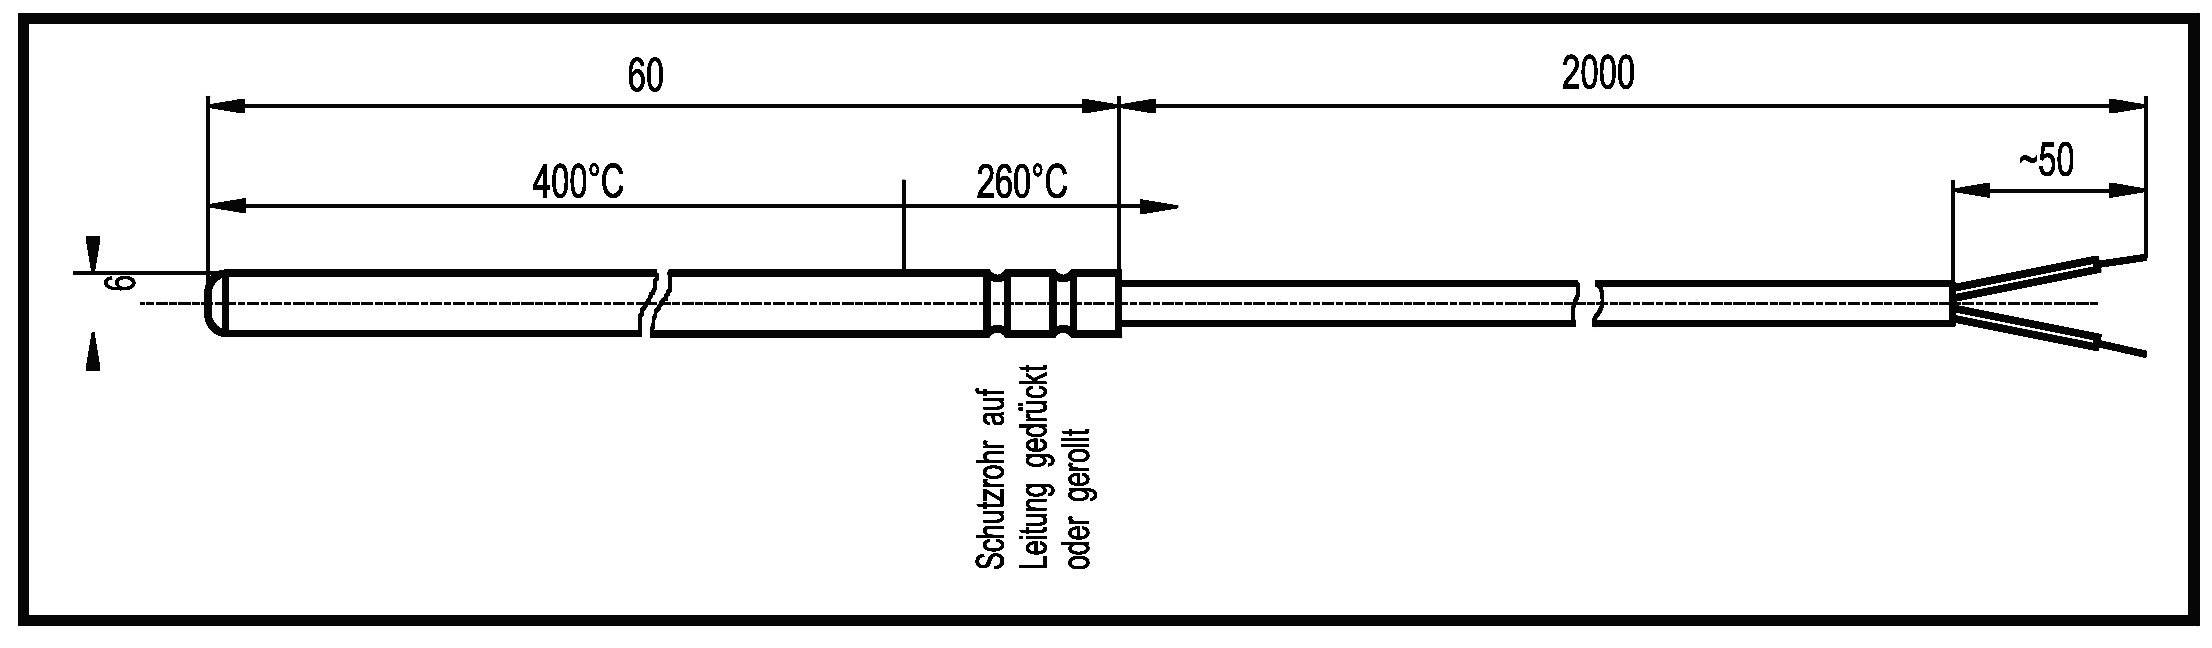 ENDA Temperatursensor Fühler-Typ Pt100 Messbereich Temperatur-50 bis 400 °C Kabellänge